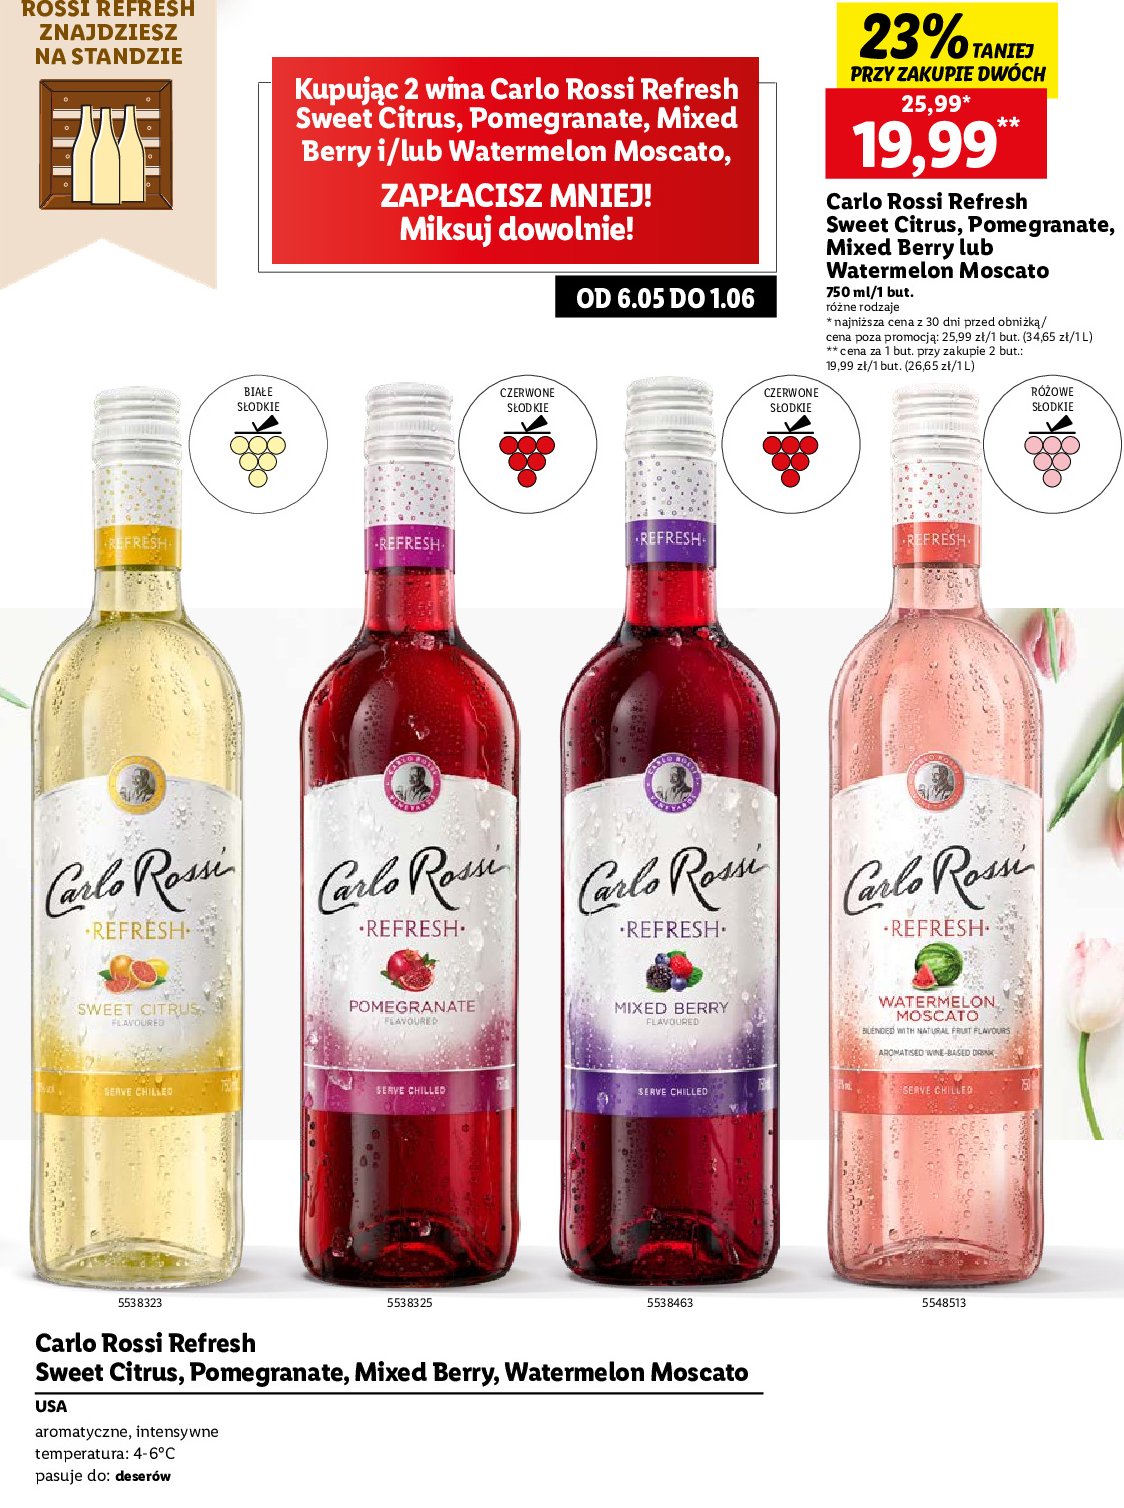 Wino Carlo rossi refresh watermelon moscato promocja w Lidl